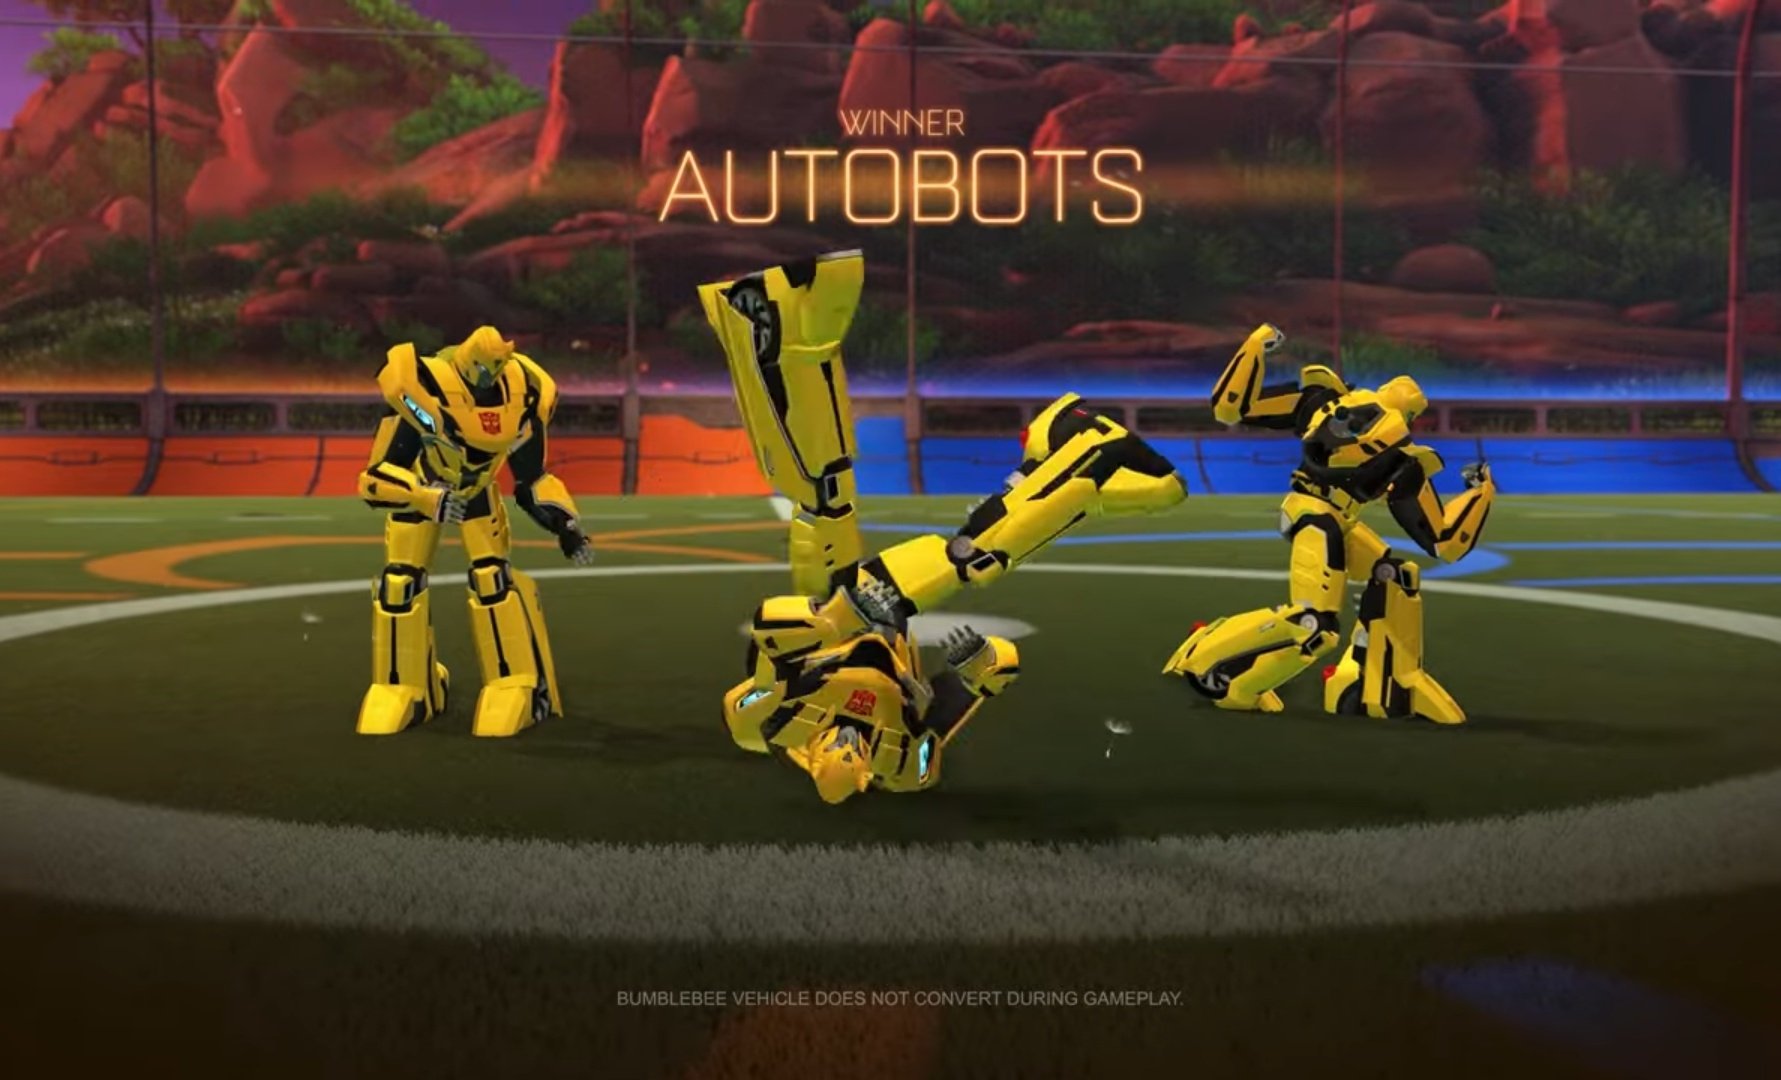 Rocket League X Transformers, la nueva colaboración de los autos futboleros. 27